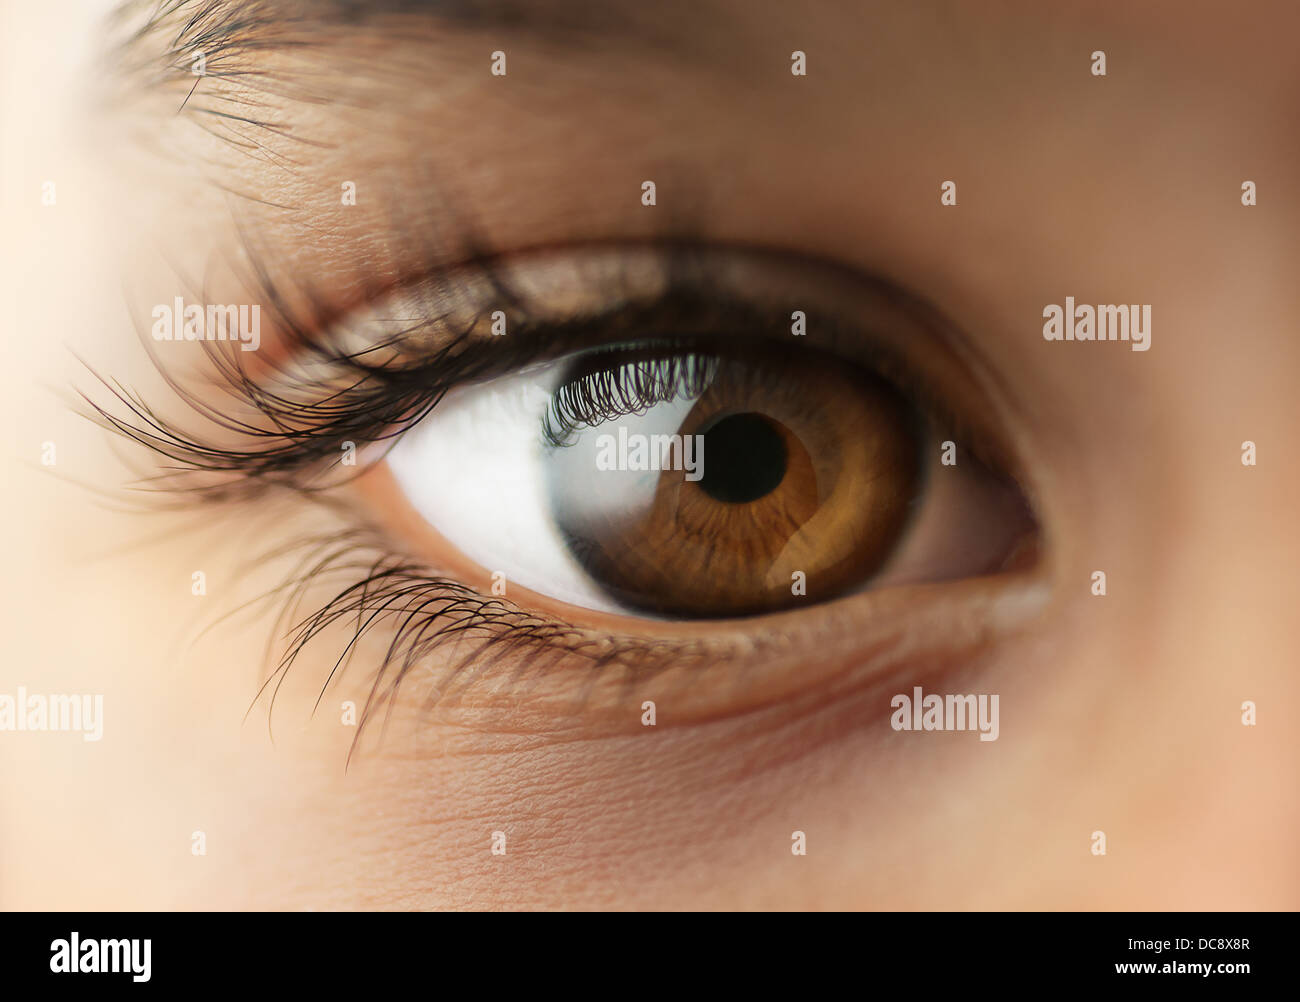 Menschliche Auge des Kindes - Makro - Nahaufnahme Stockfoto